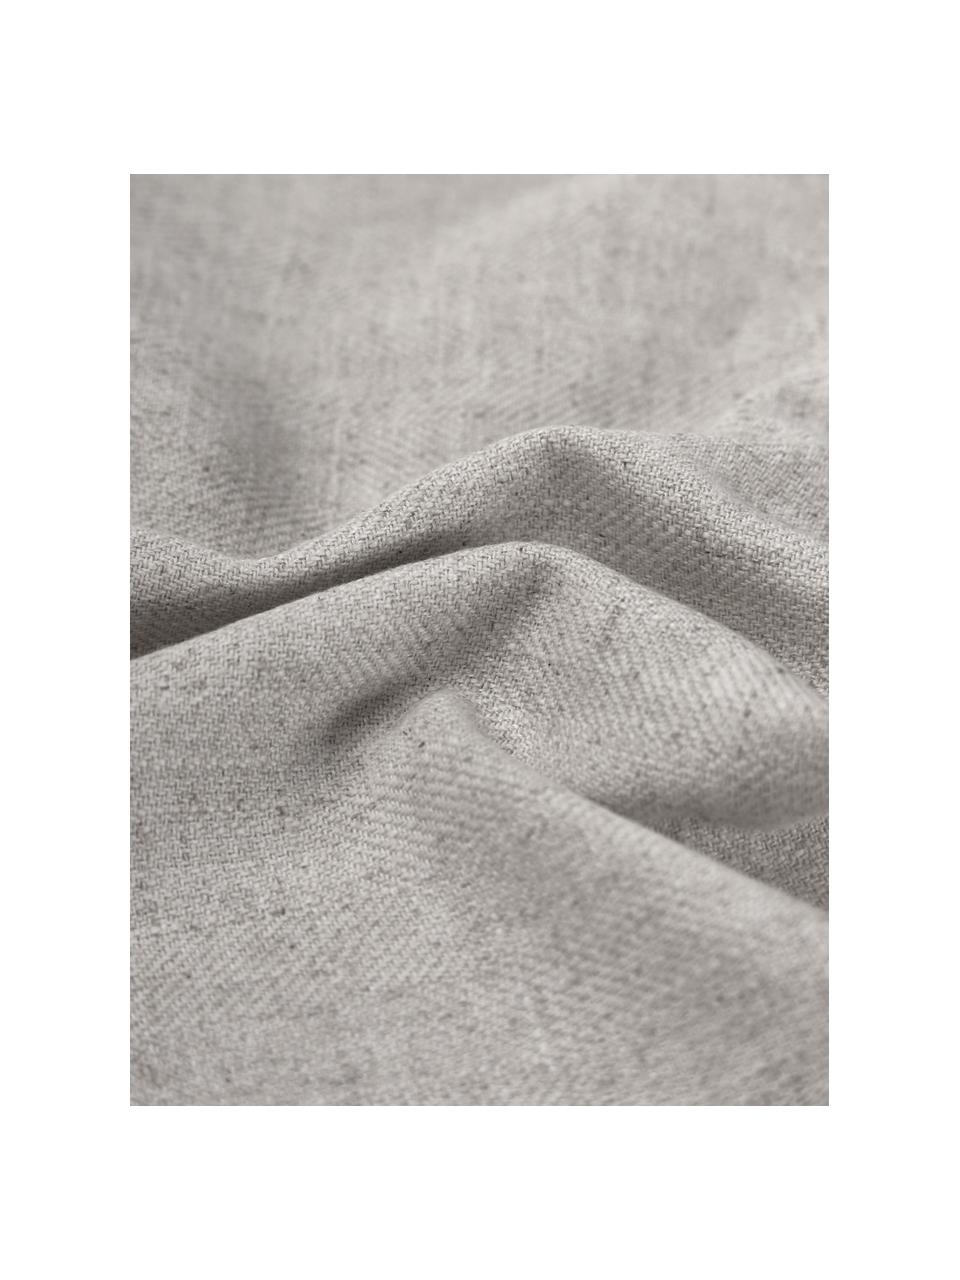 Kussenhoes Colette in grijs met franjes, 60% polyester, 25% katoen, 15% linnen, Grijs, B 30 x L 50 cm